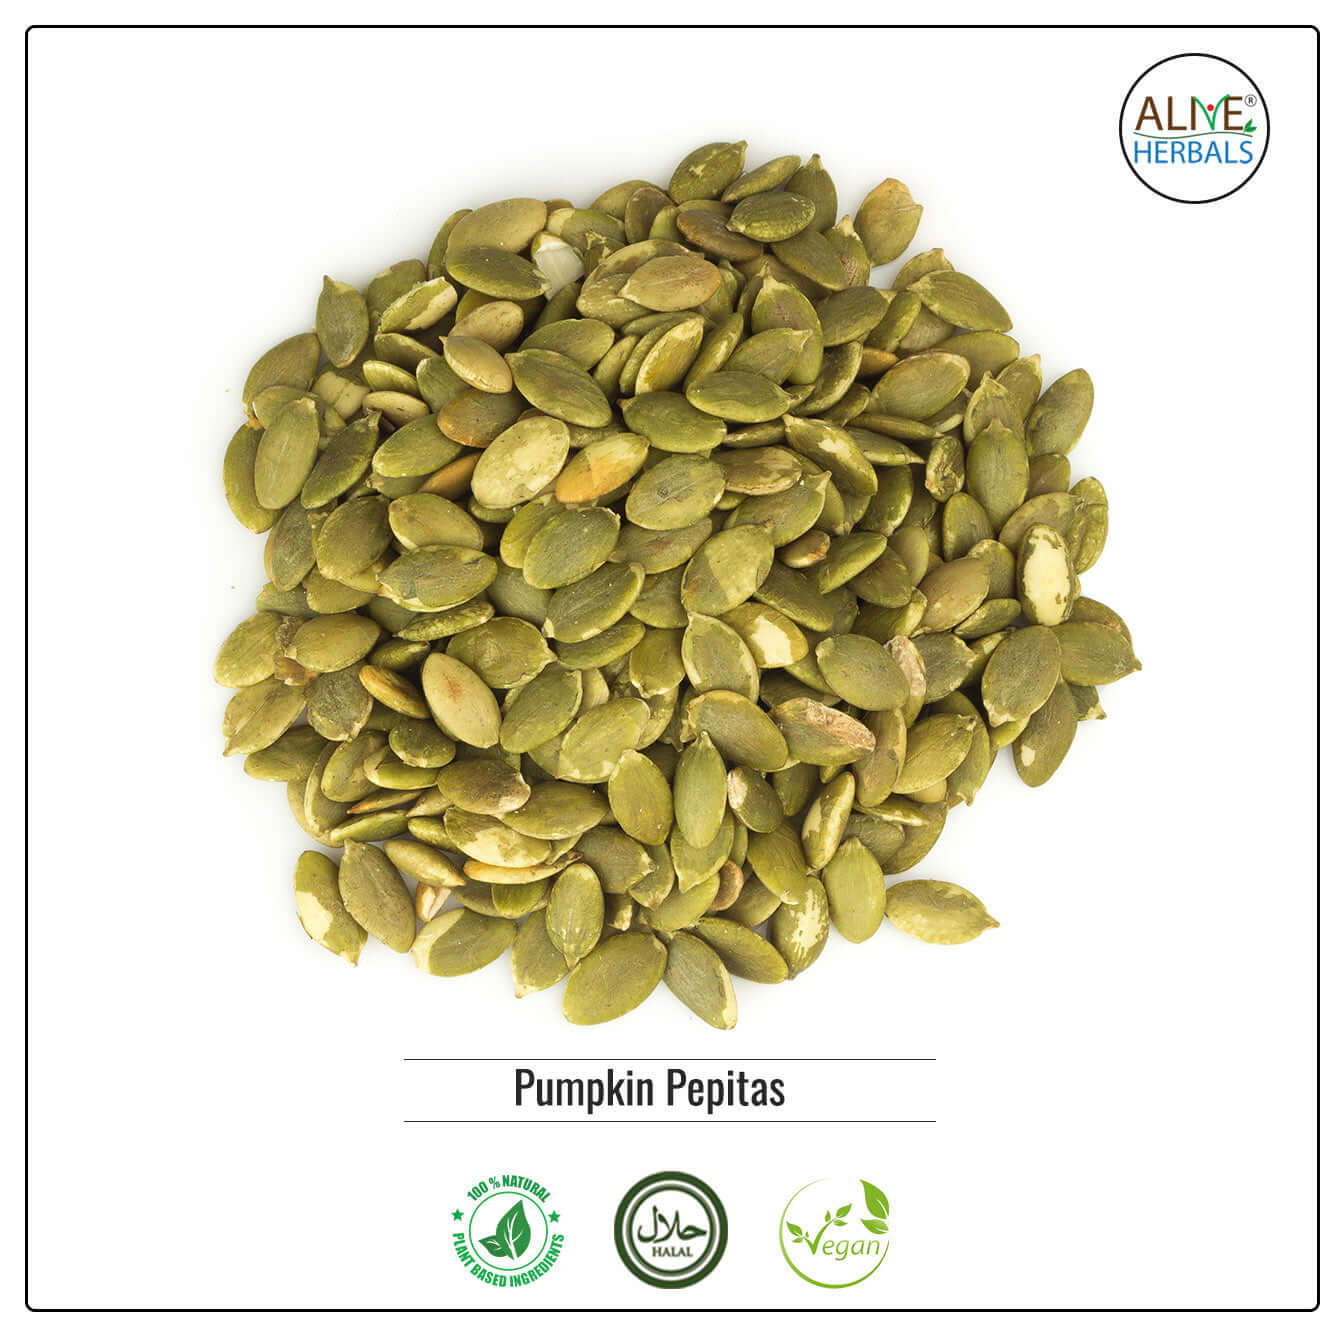 Pumpkin Pepitas - Buy at Natural Food Store | Alive Herbals.